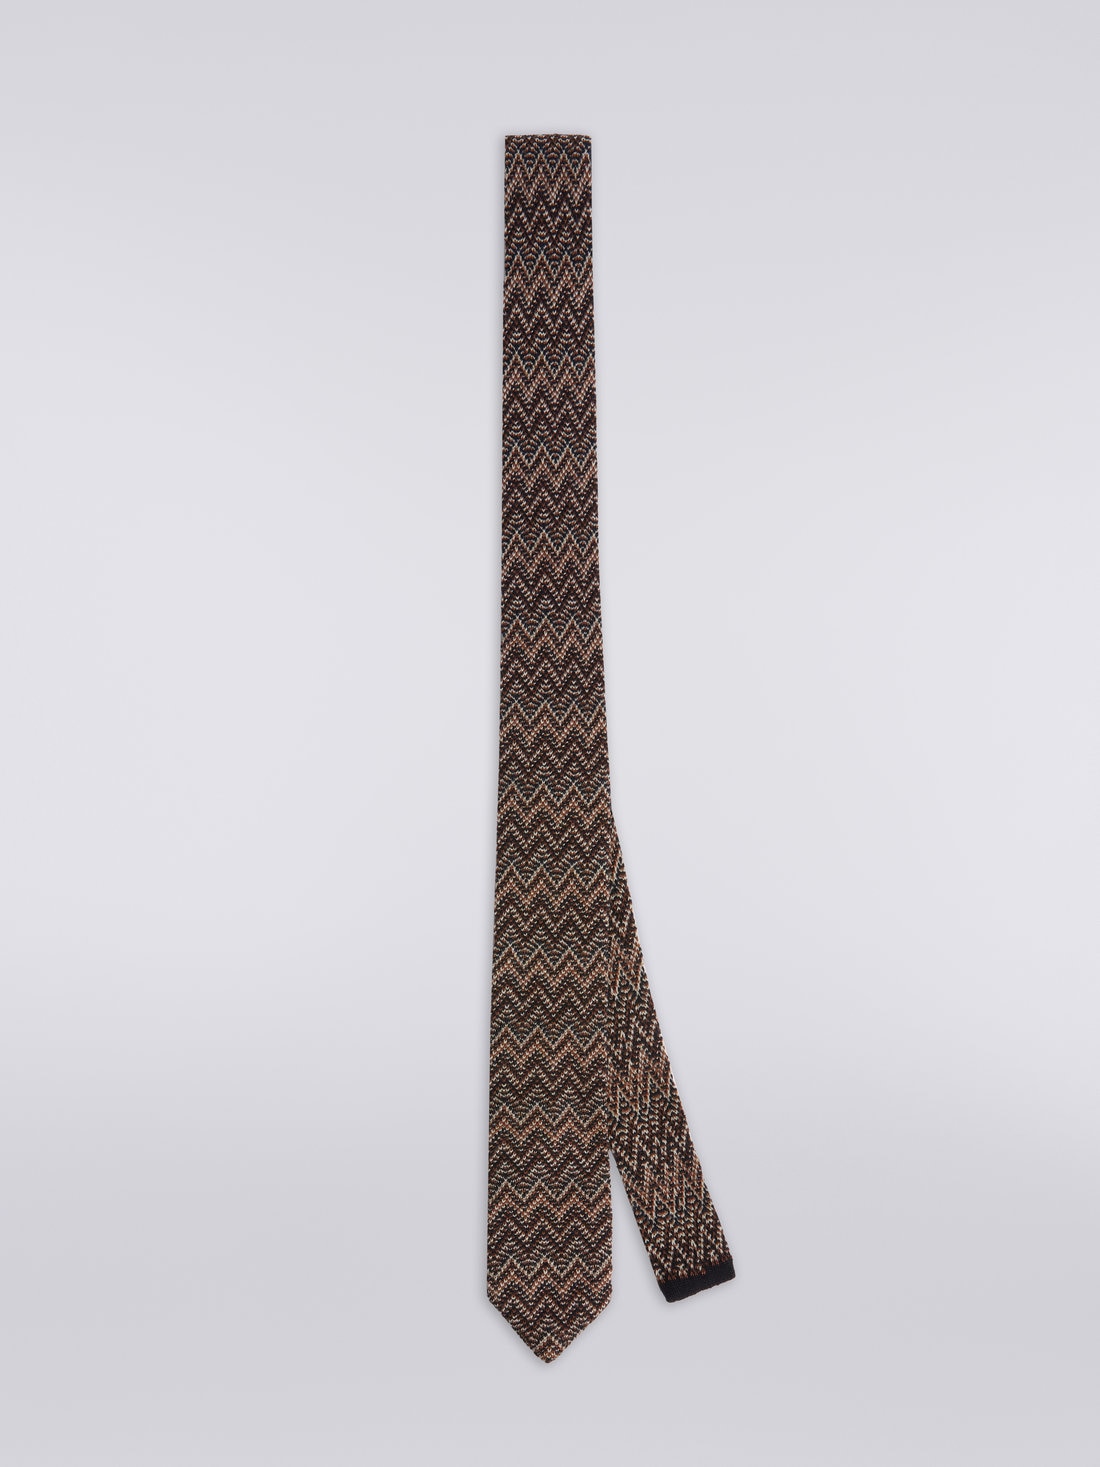 Cravatta in lana e seta chevron , Multicolore  - 8053147023434 - 0